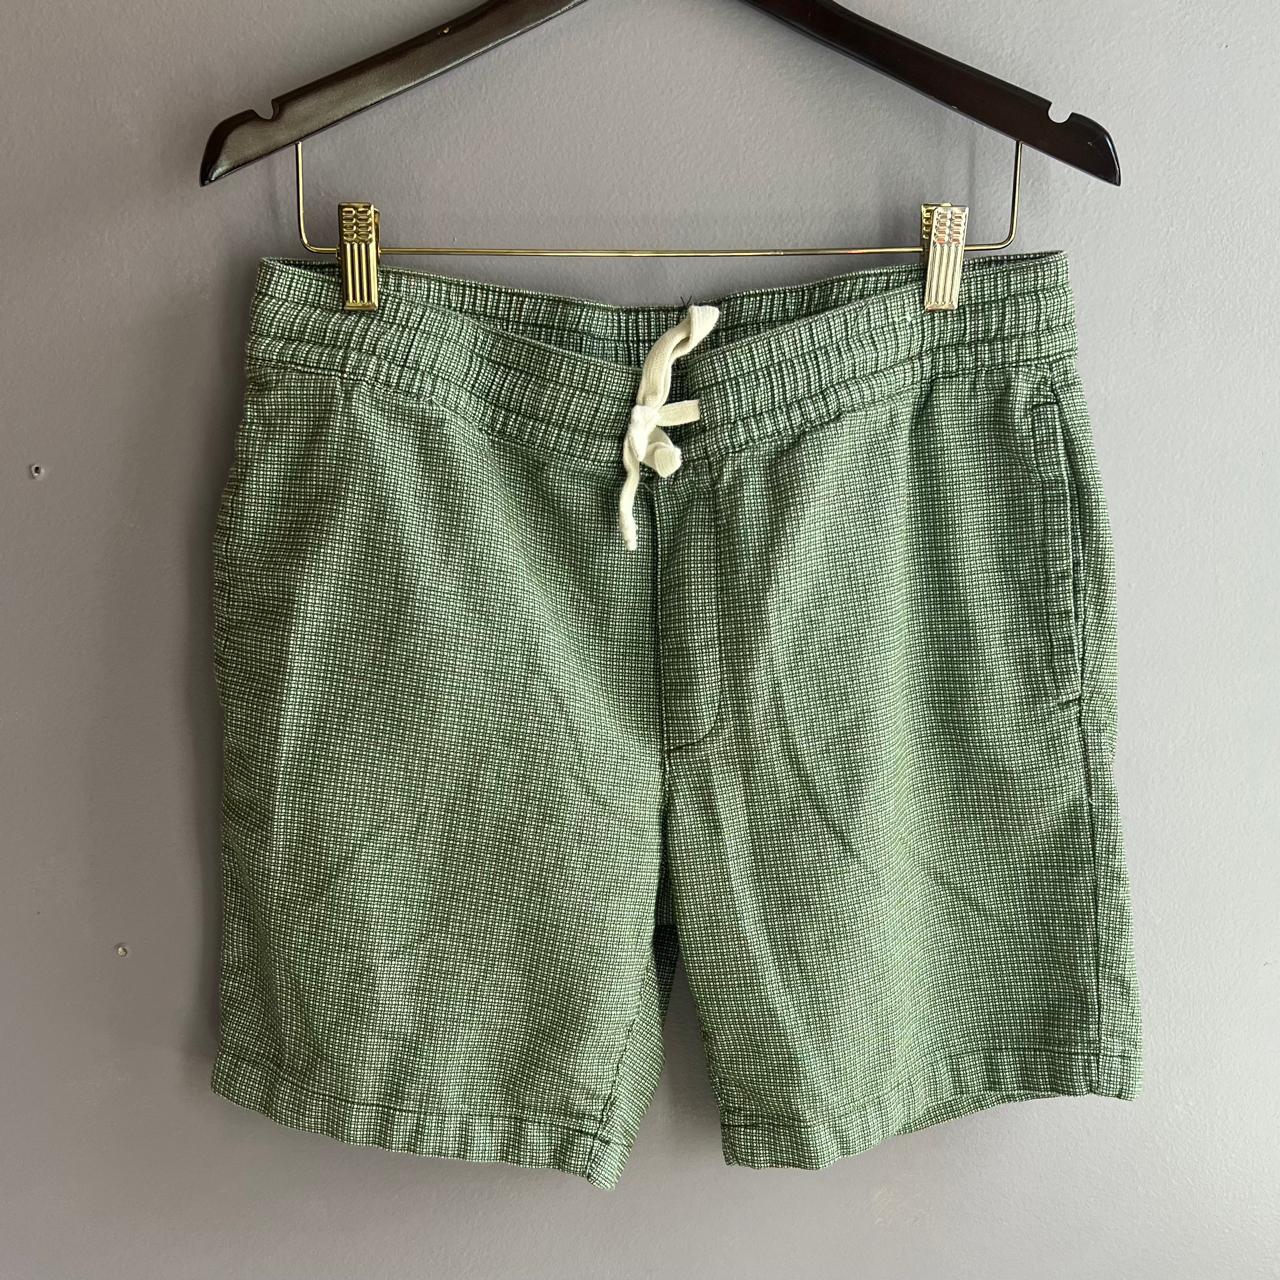 Goodfellow & Co. Men's Green Shorts | Depop